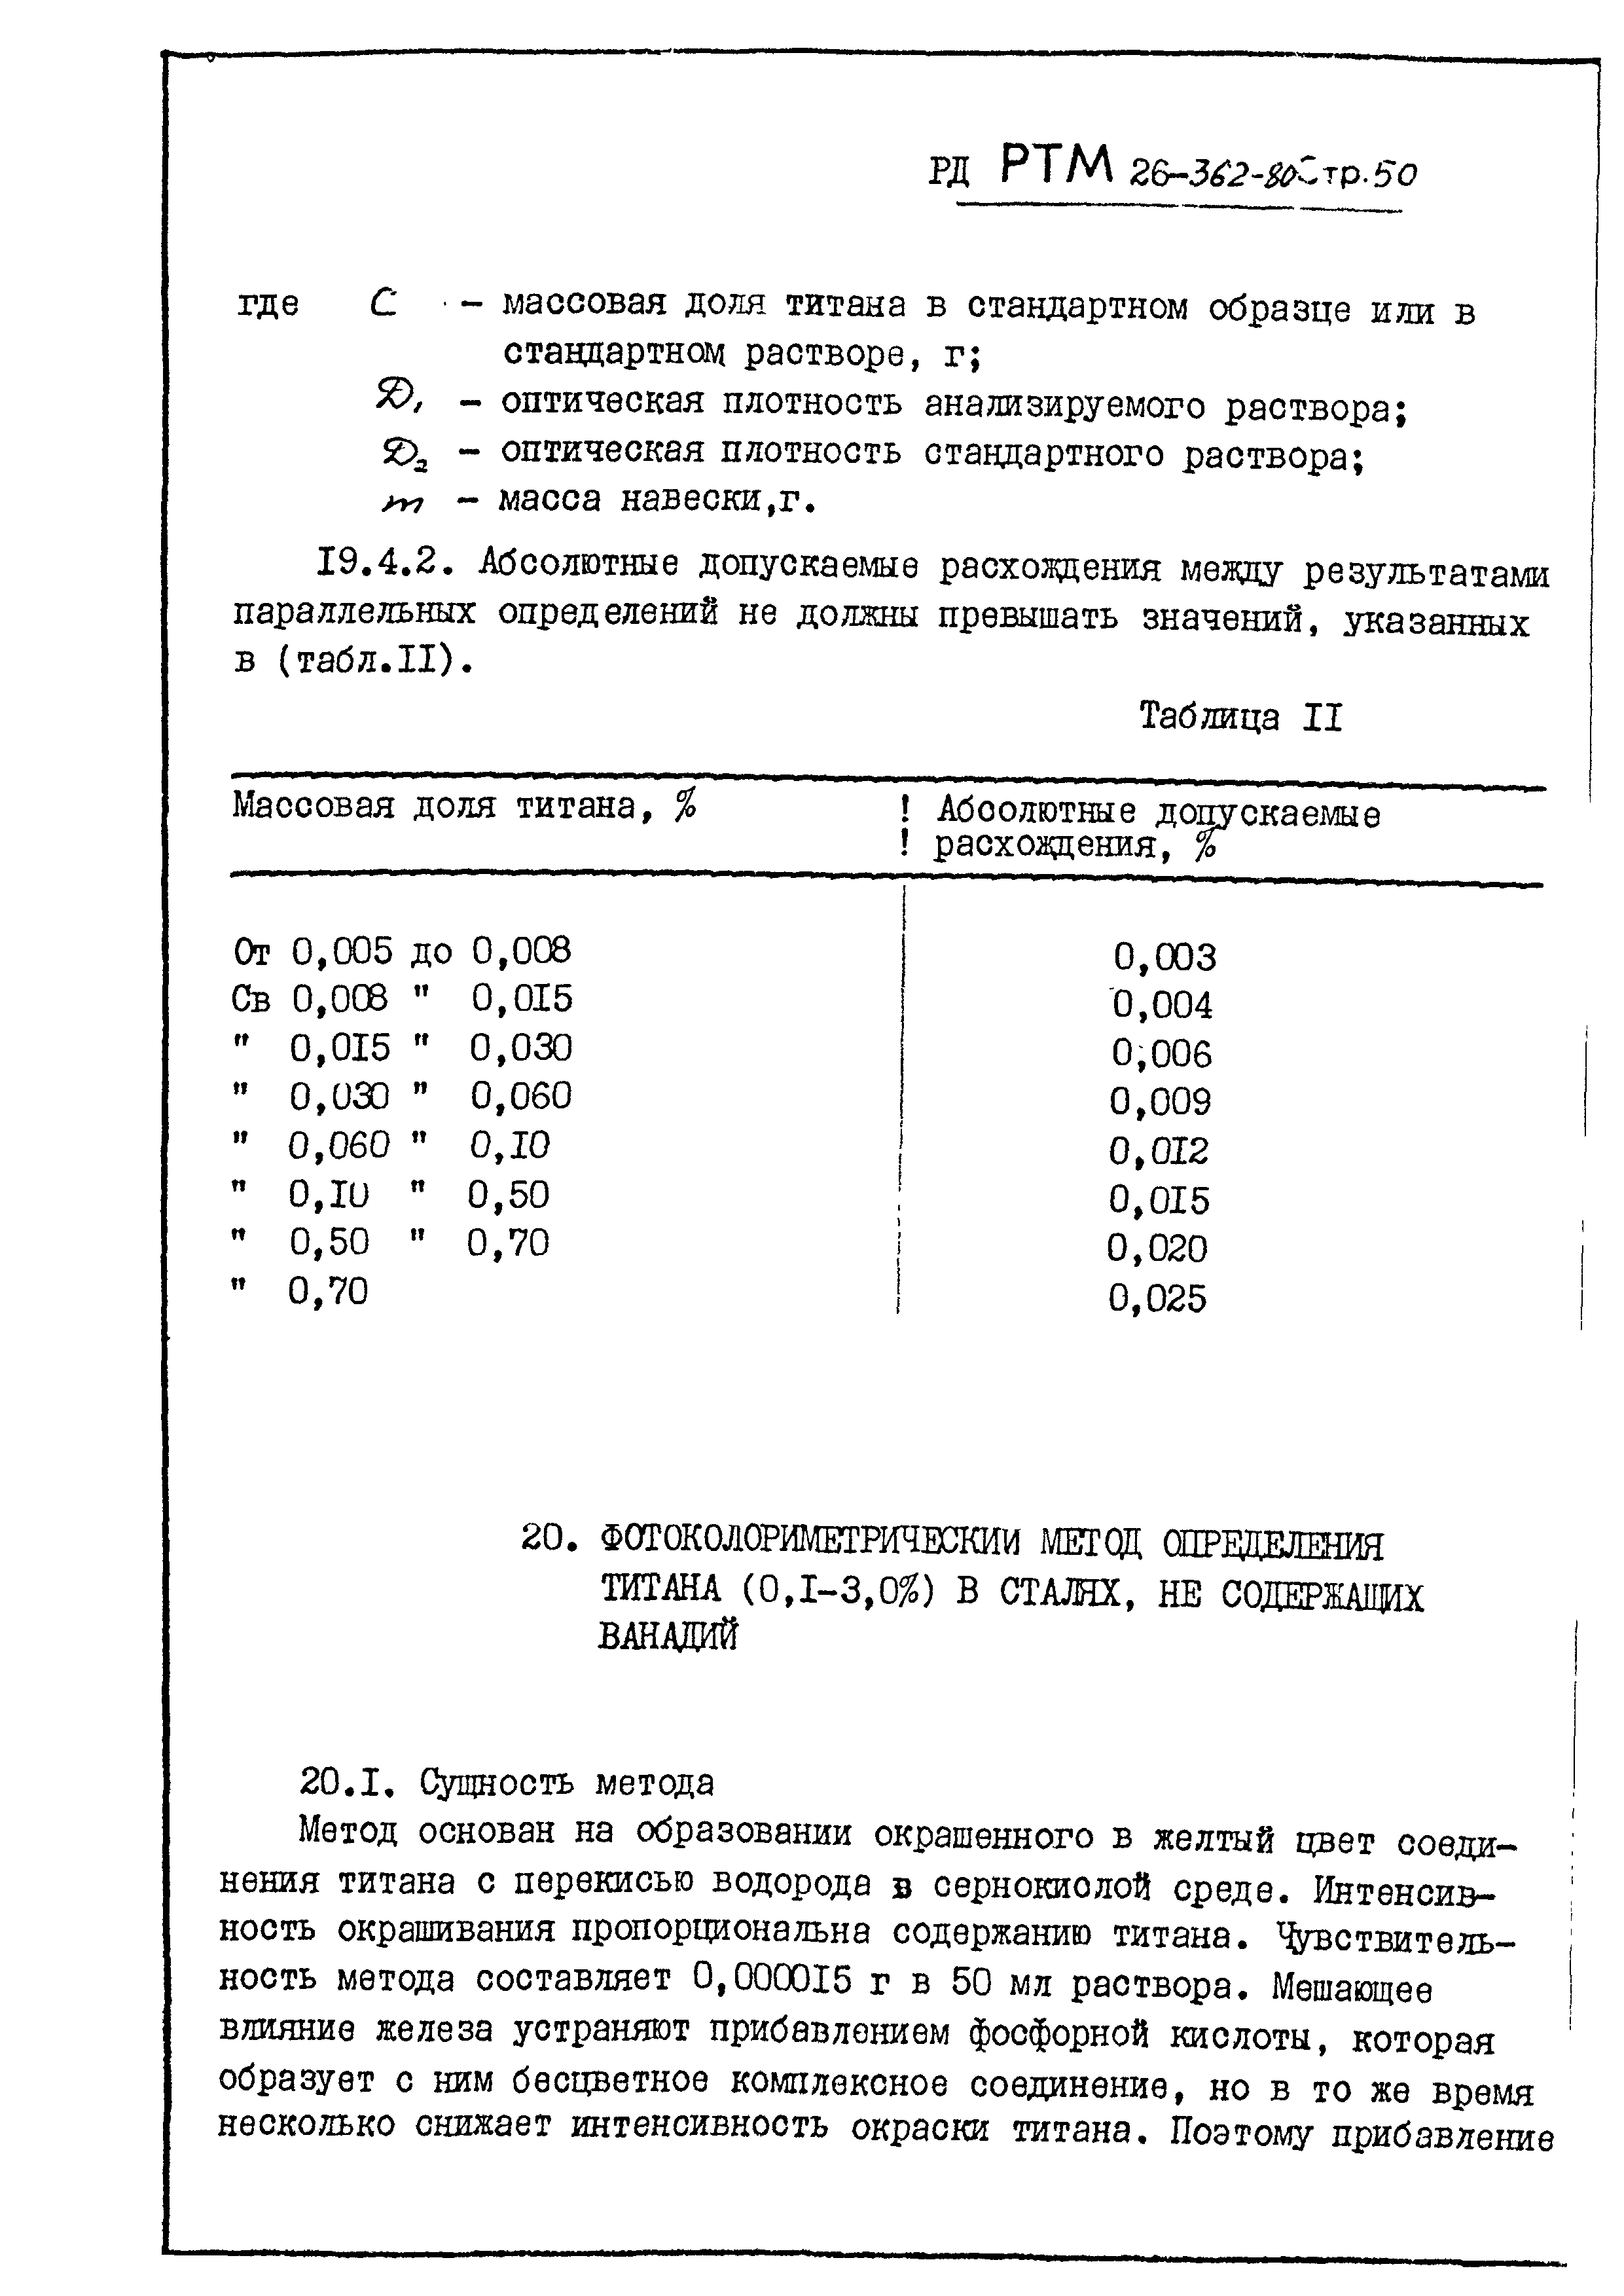 РД РТМ 26-362-80